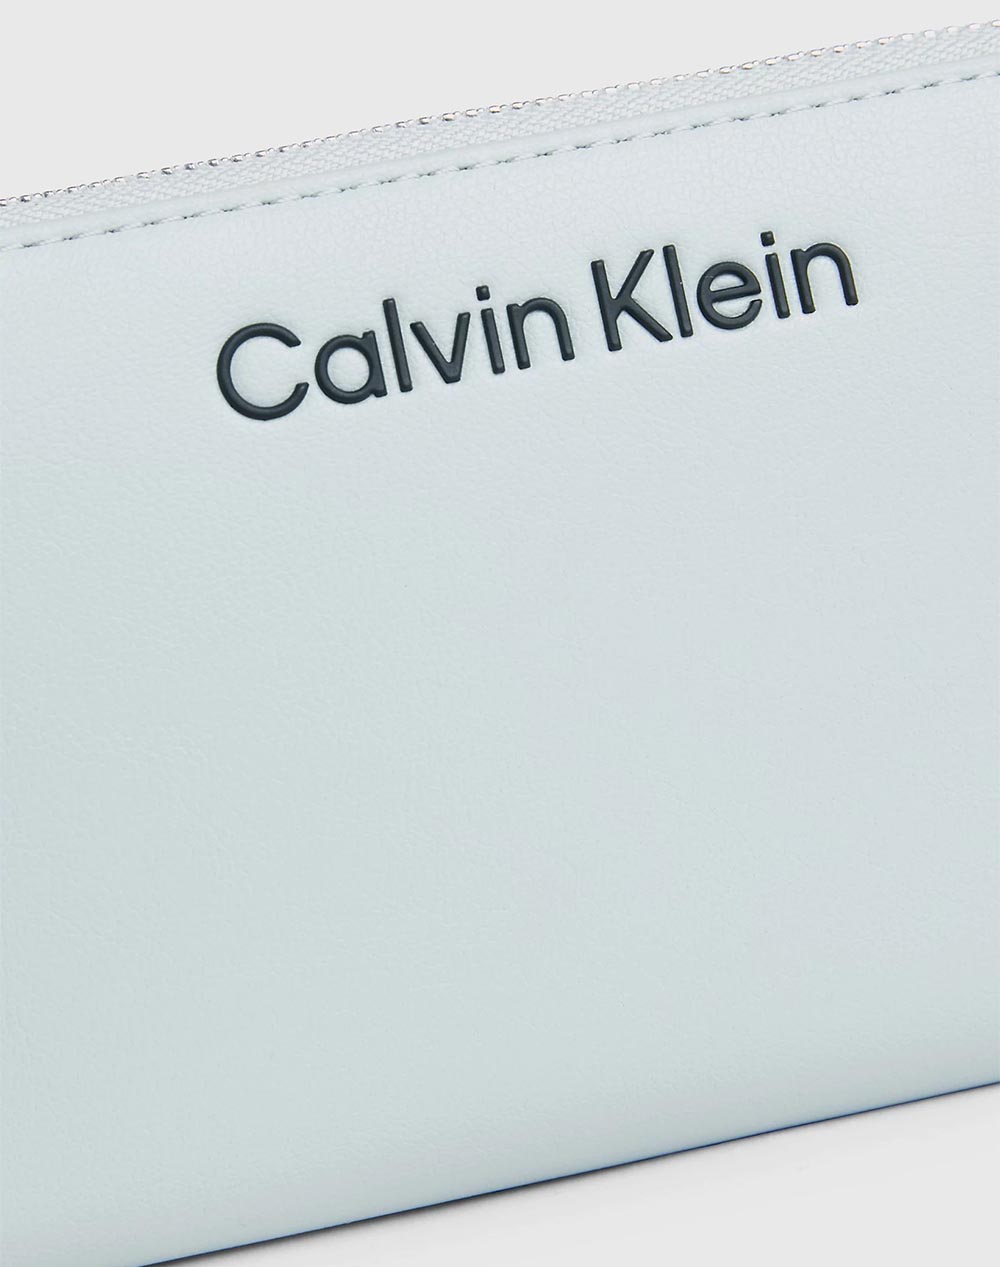 CALVIN KLEIN GRACIE LARGE ZIP AROUND WALLET (Dimensions: 10 x 19 x 2 cm)